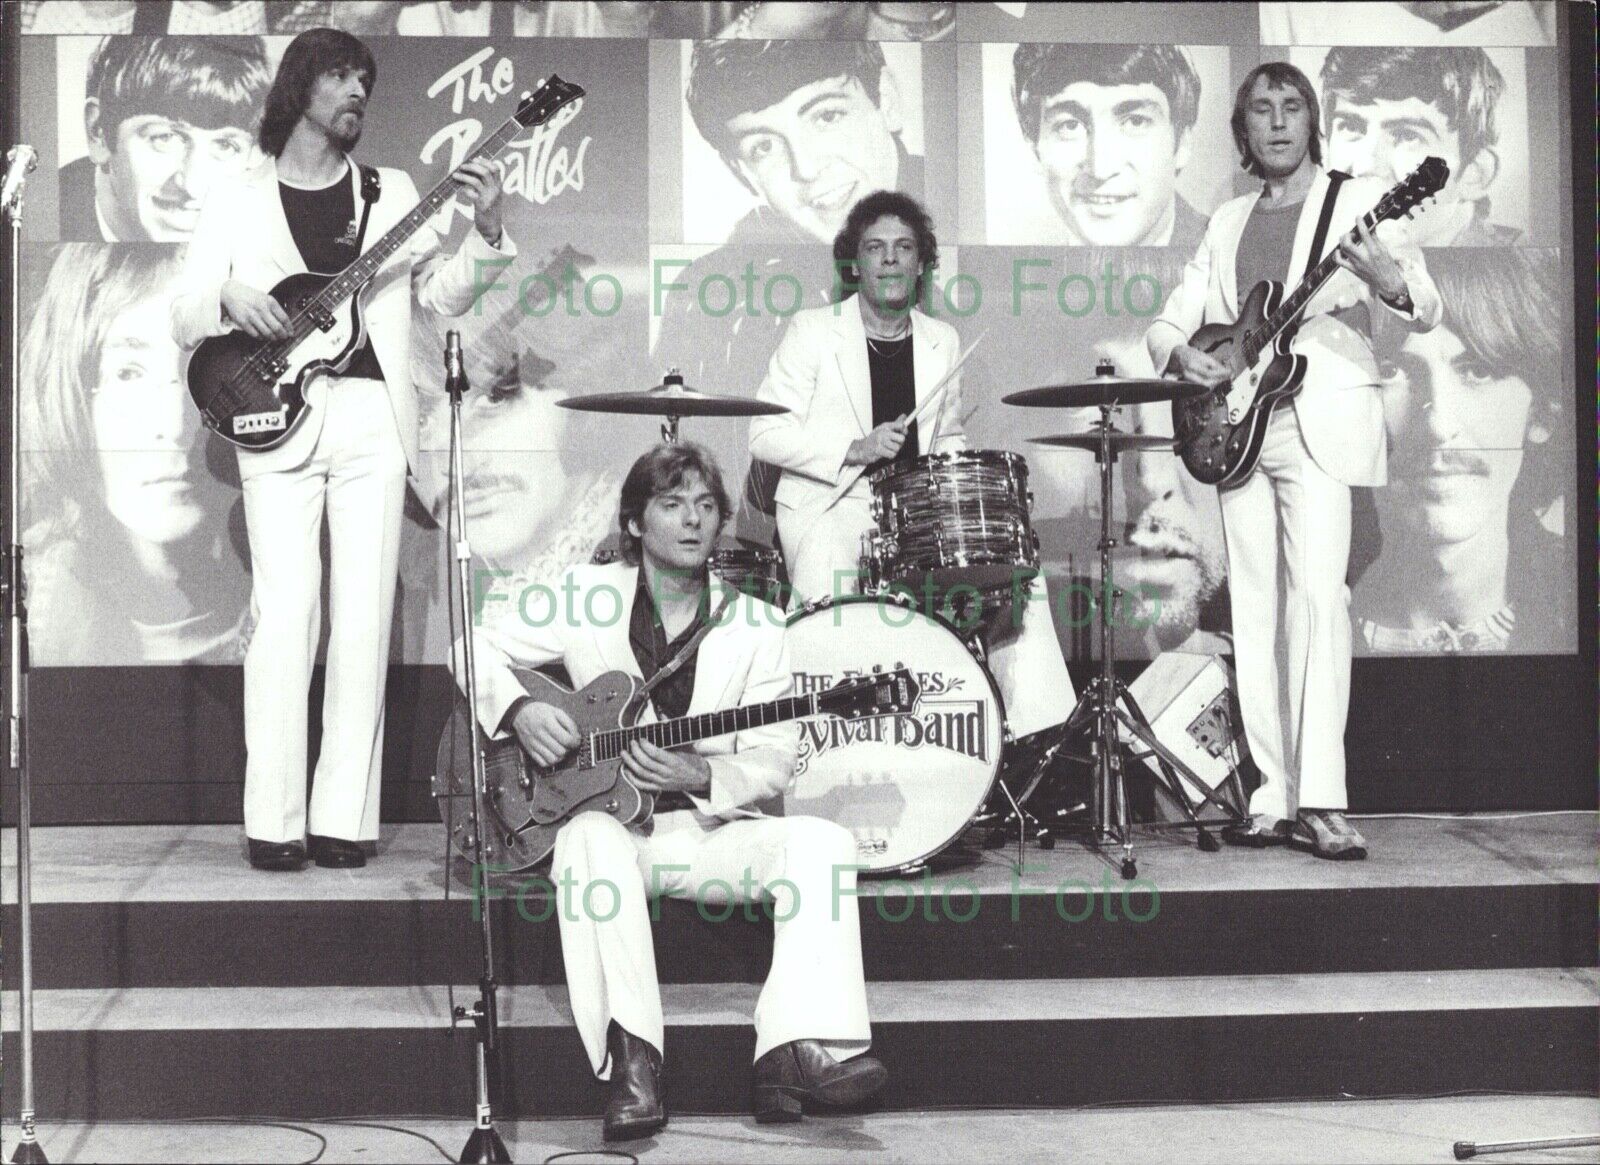 Beatles Revival Band Pop Music Vintage Press Photo Poster painting R?hnert (UN-293